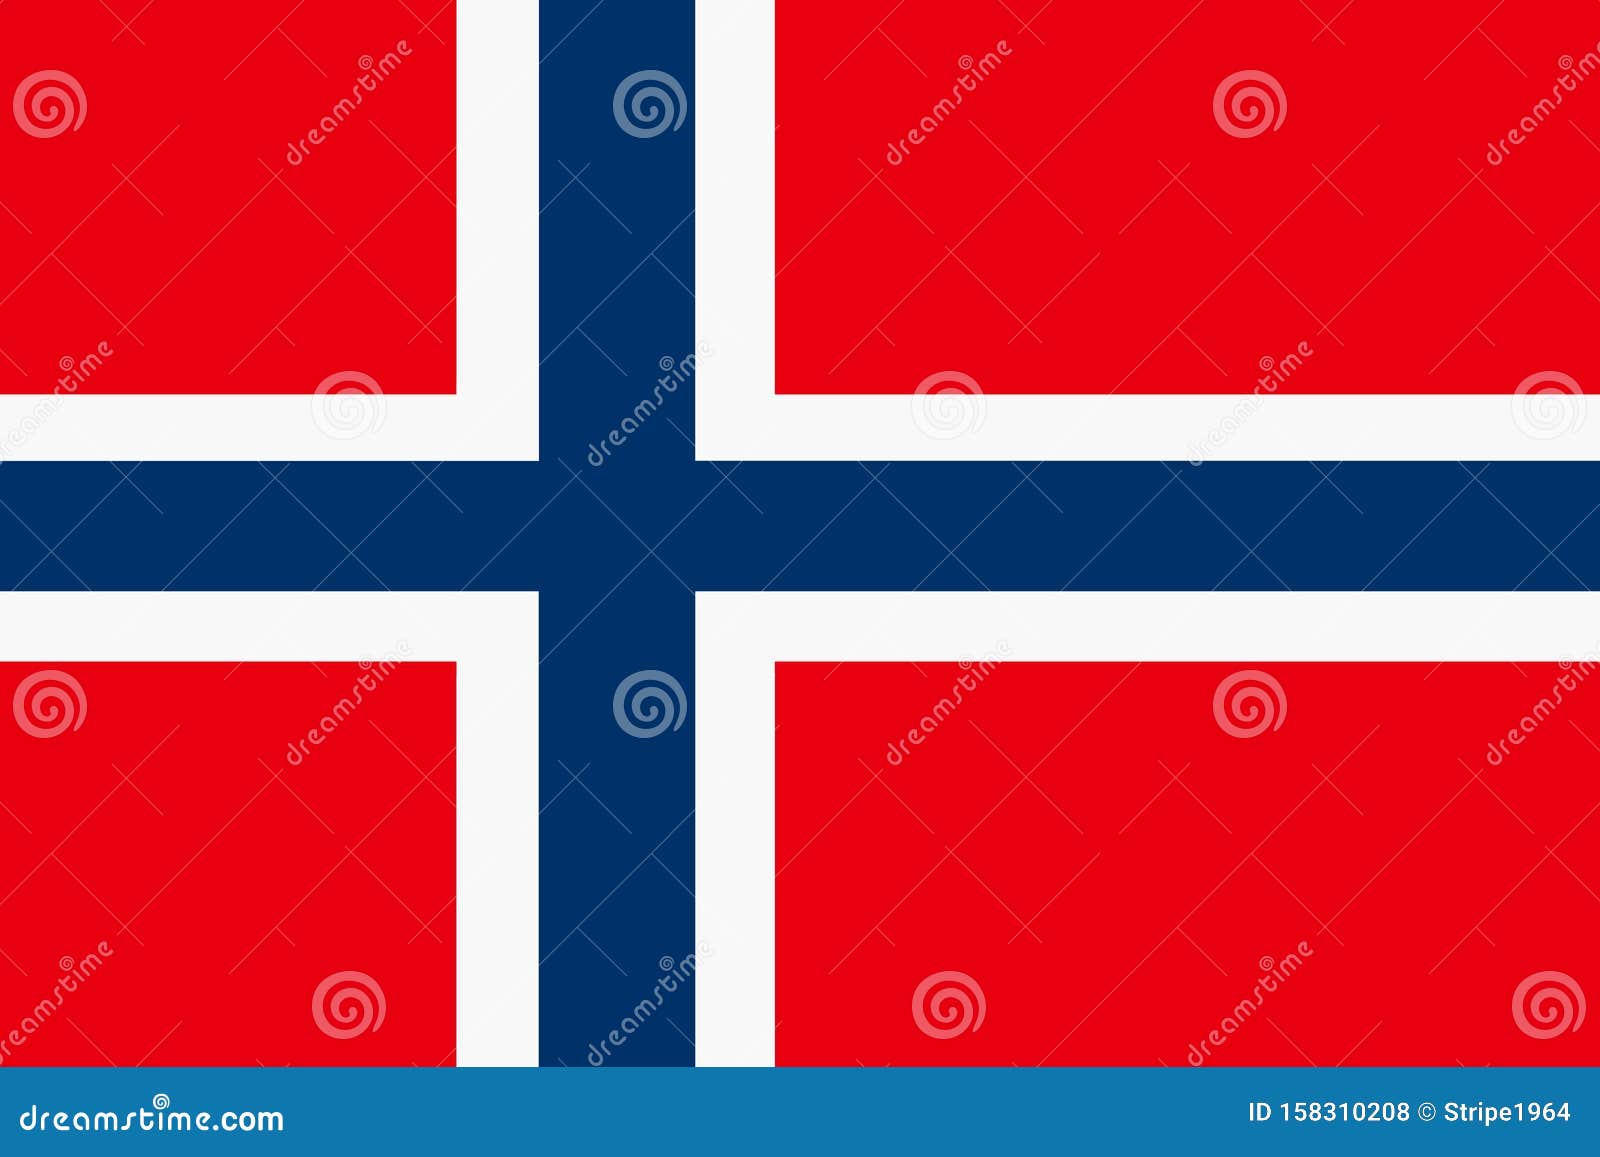 Norway Flag Background Illustration Red White Blue Cross Stock Illustration Illustration norway, flag: